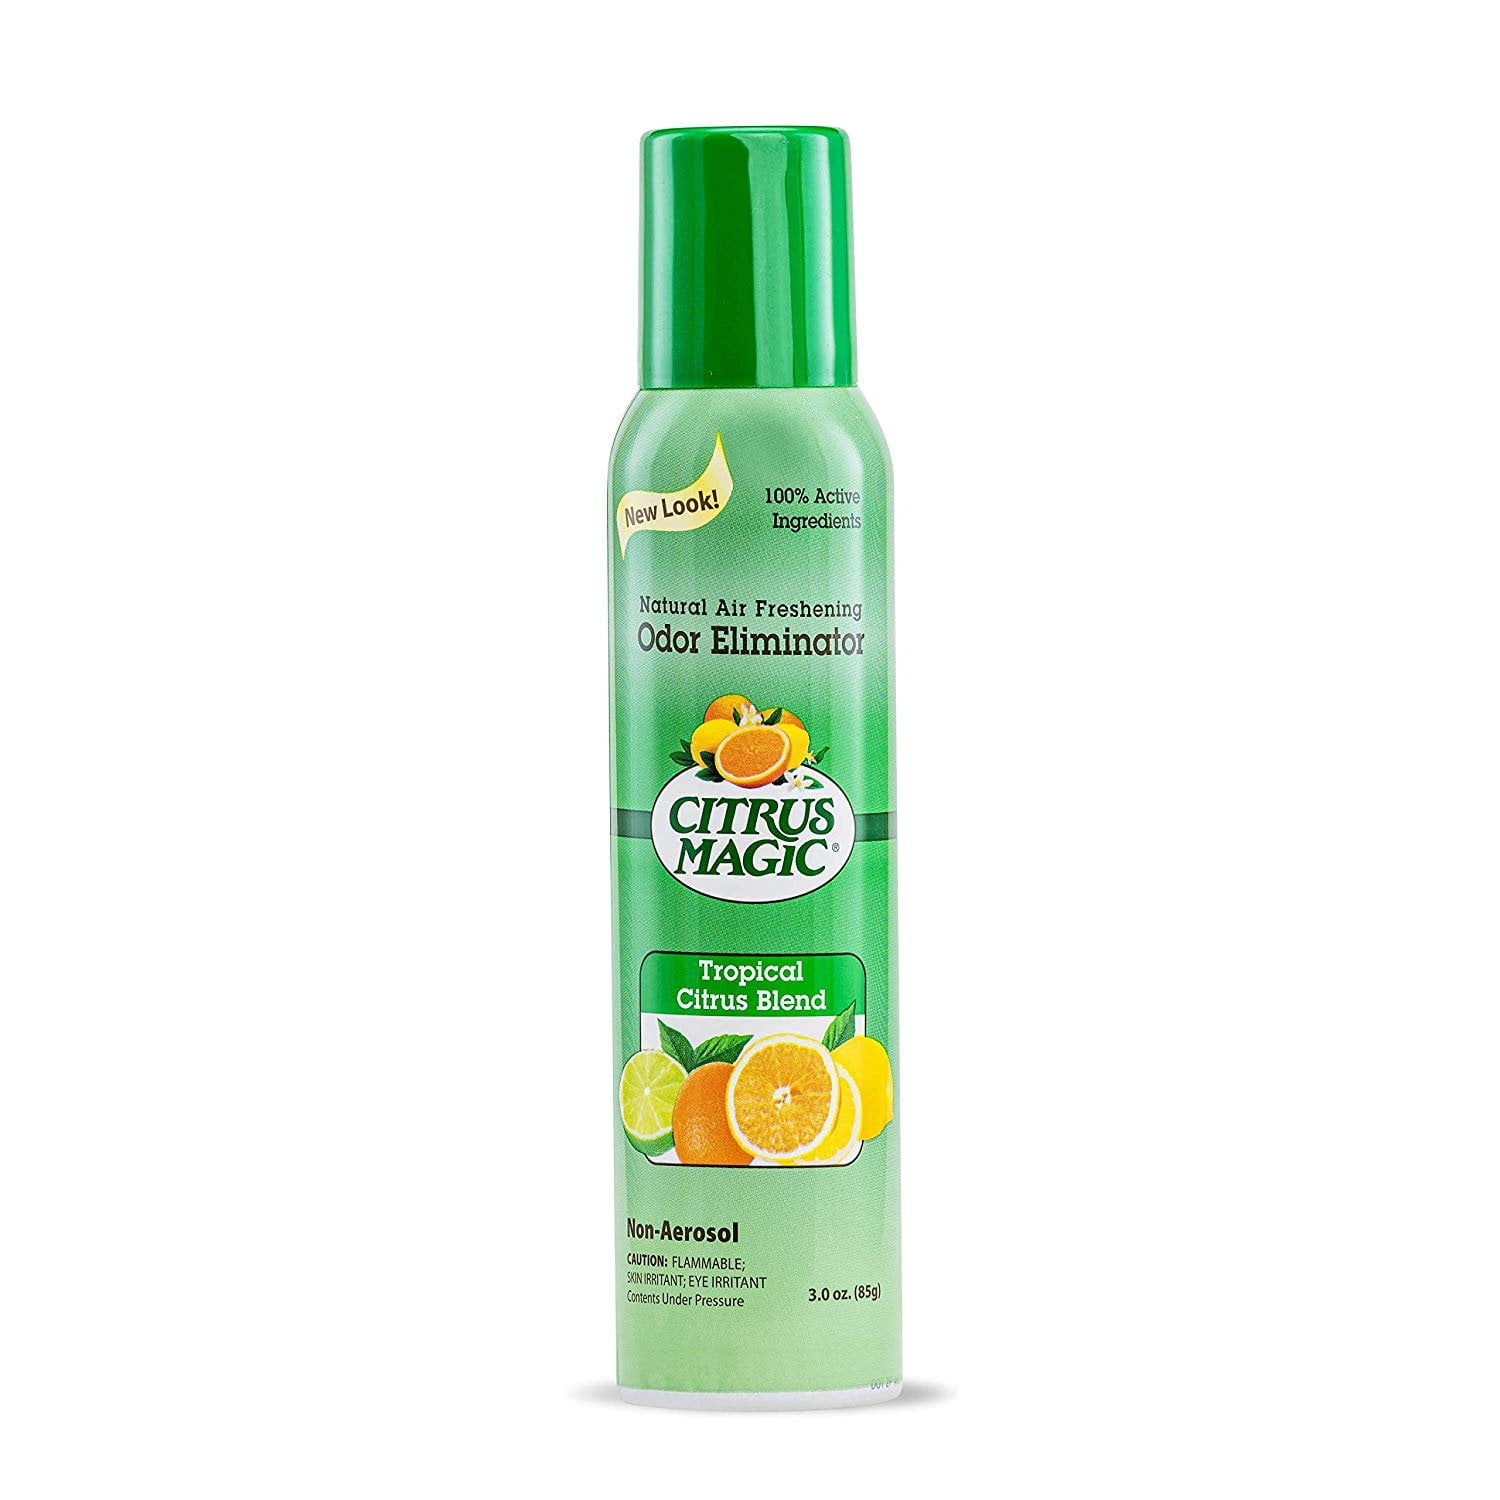 Citrus Magic Air Freshener, Non-Aerosol, Original Tropical Citrus - 3.5 fl oz can